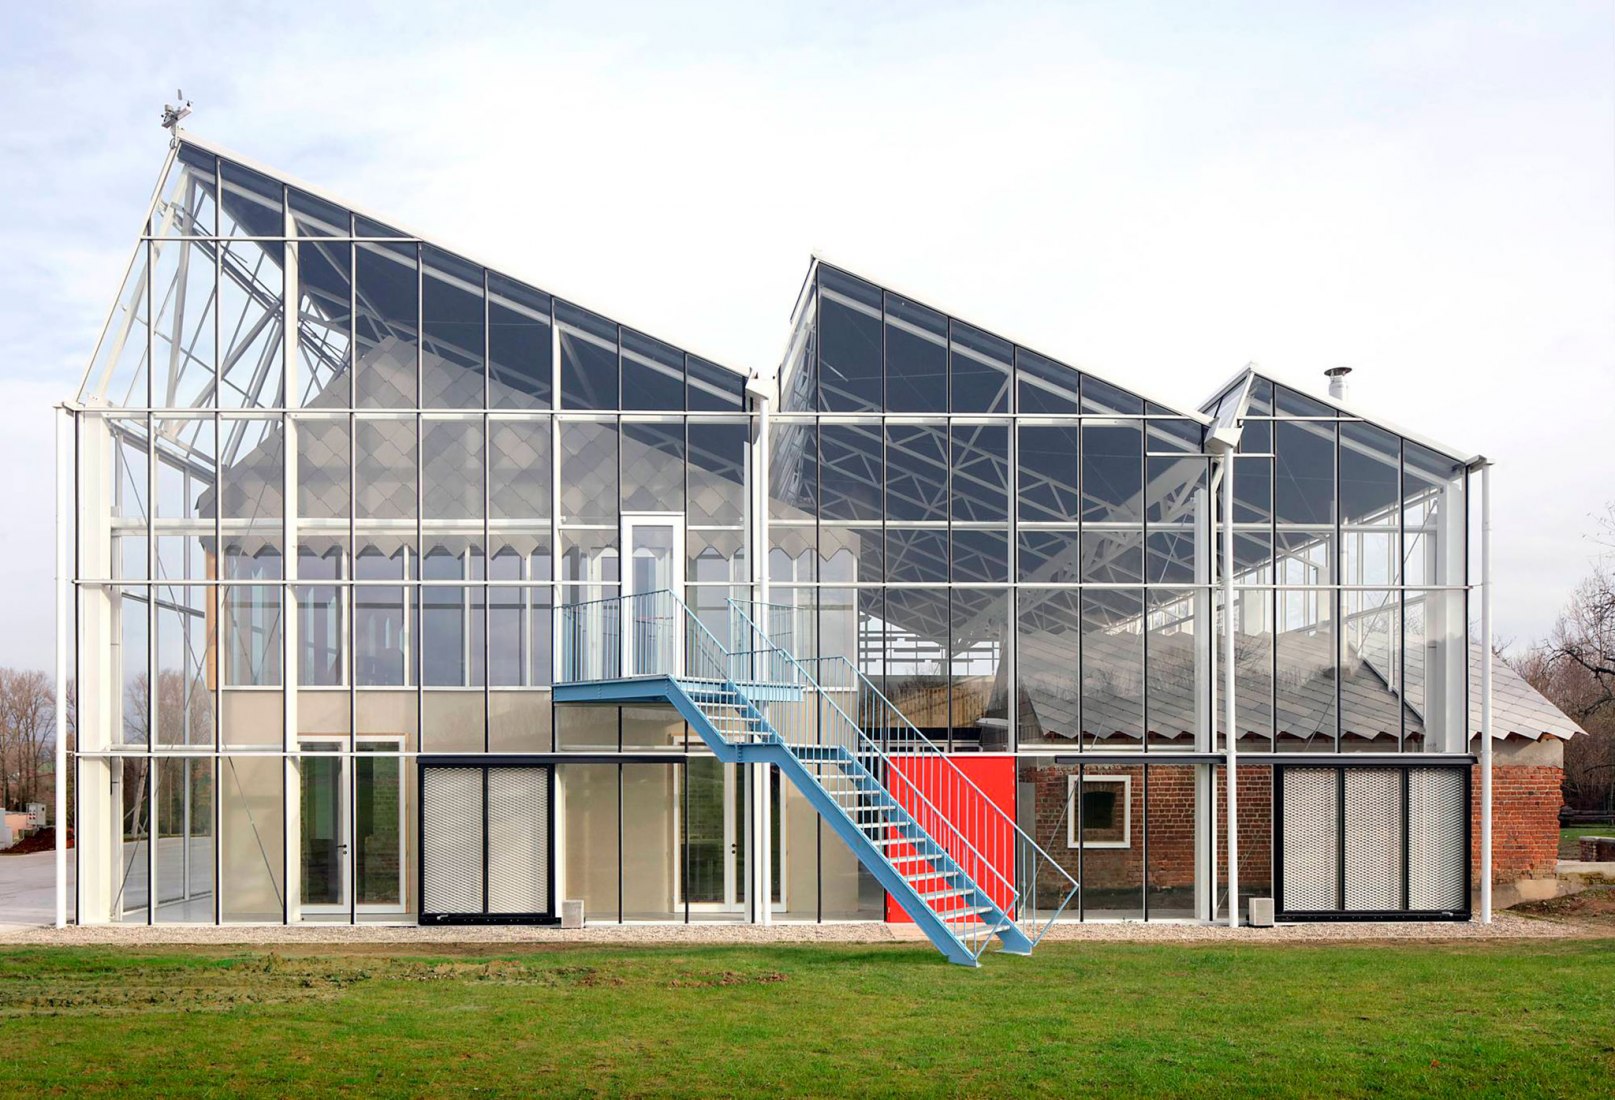 Centro educativo Paddenbroek por jo taillieu architecten. Fotografía por Filip Dujardin.